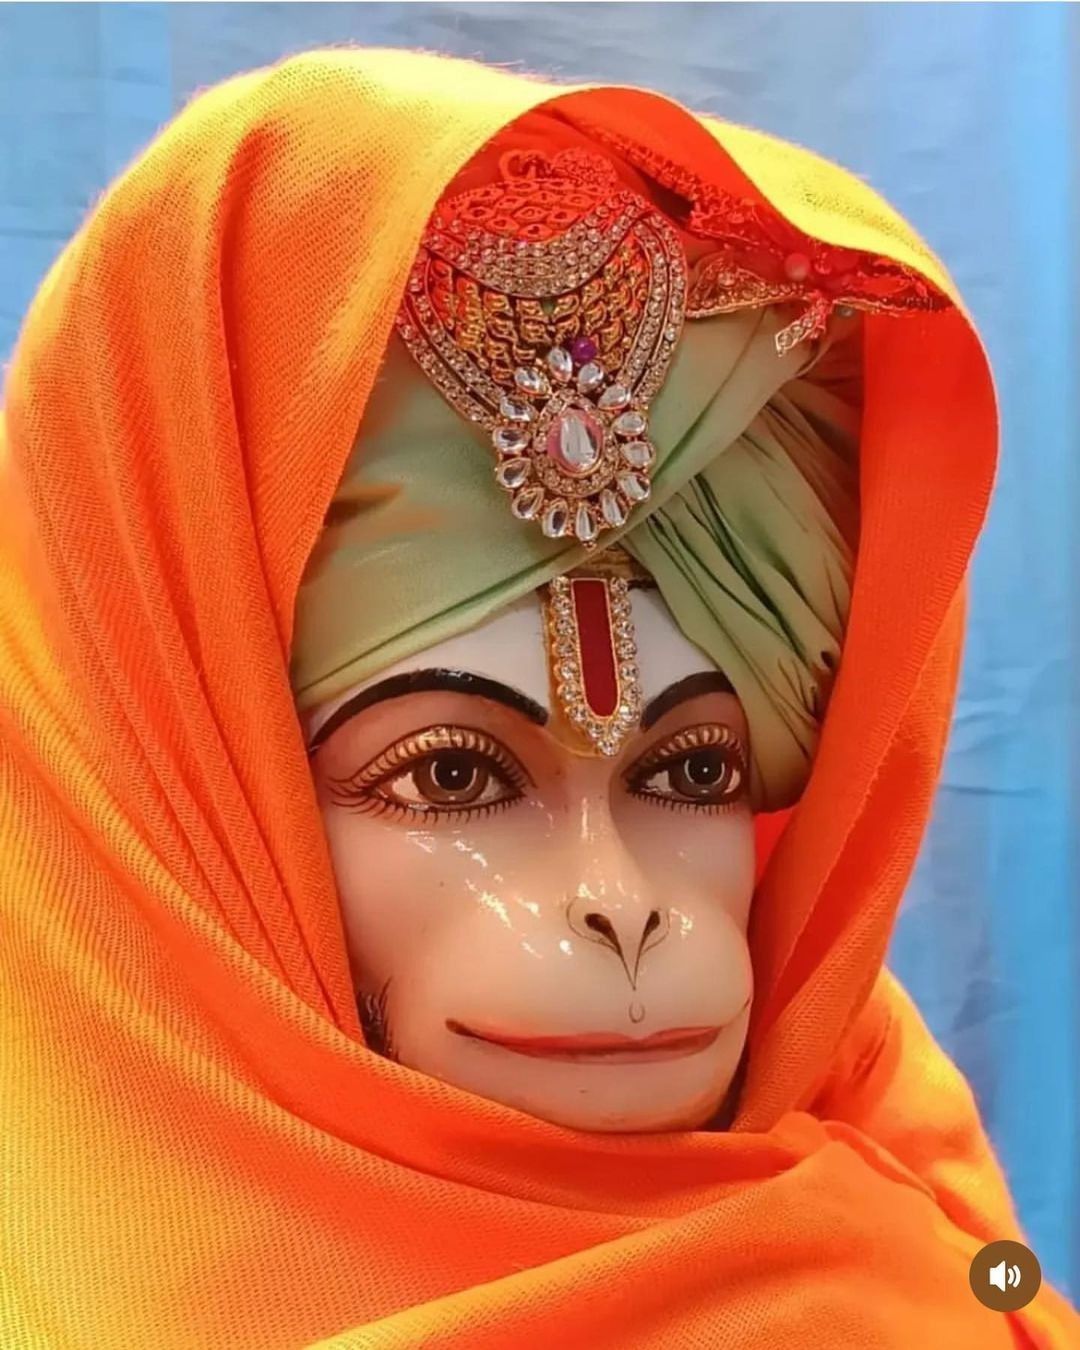 Jai Shri Ram 🙏 Jai Bajrangbali 🙏 Images